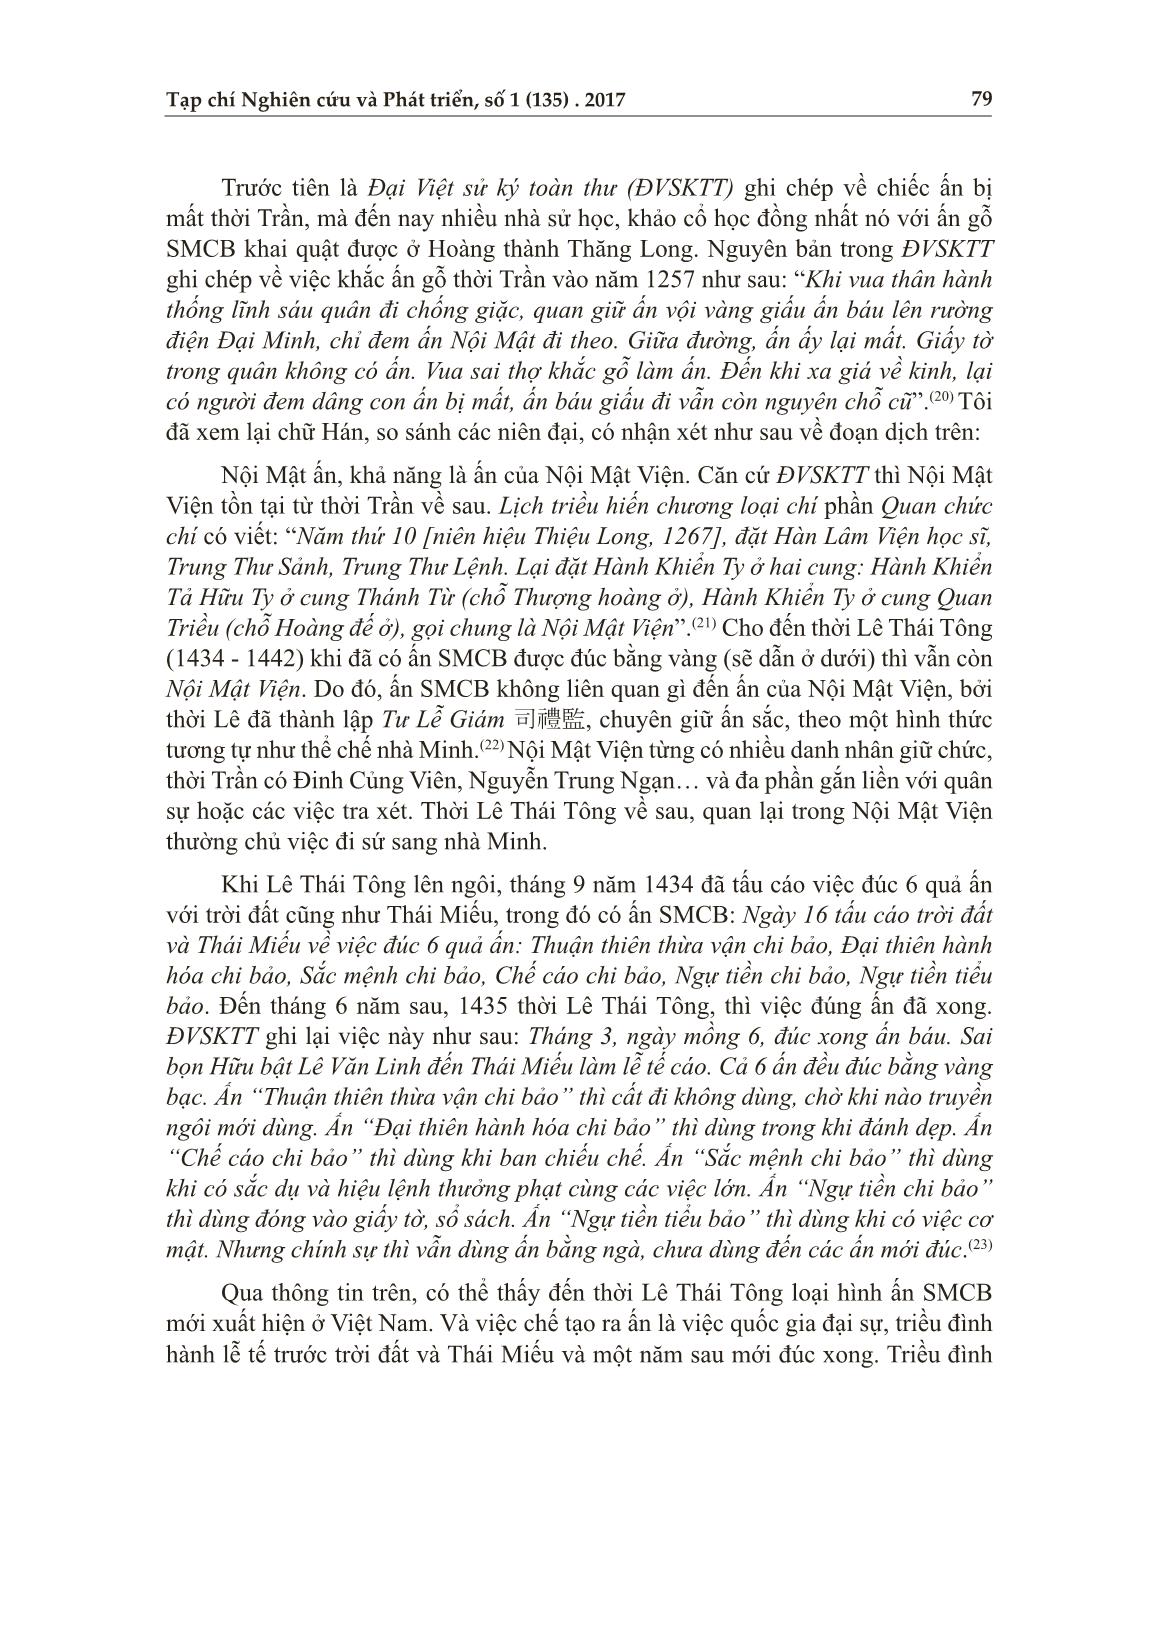 Ấn “sắc mệnh chi bảo” ở Hoàng thành Thăng Long và trào lưu phát ấn đương đại trang 6